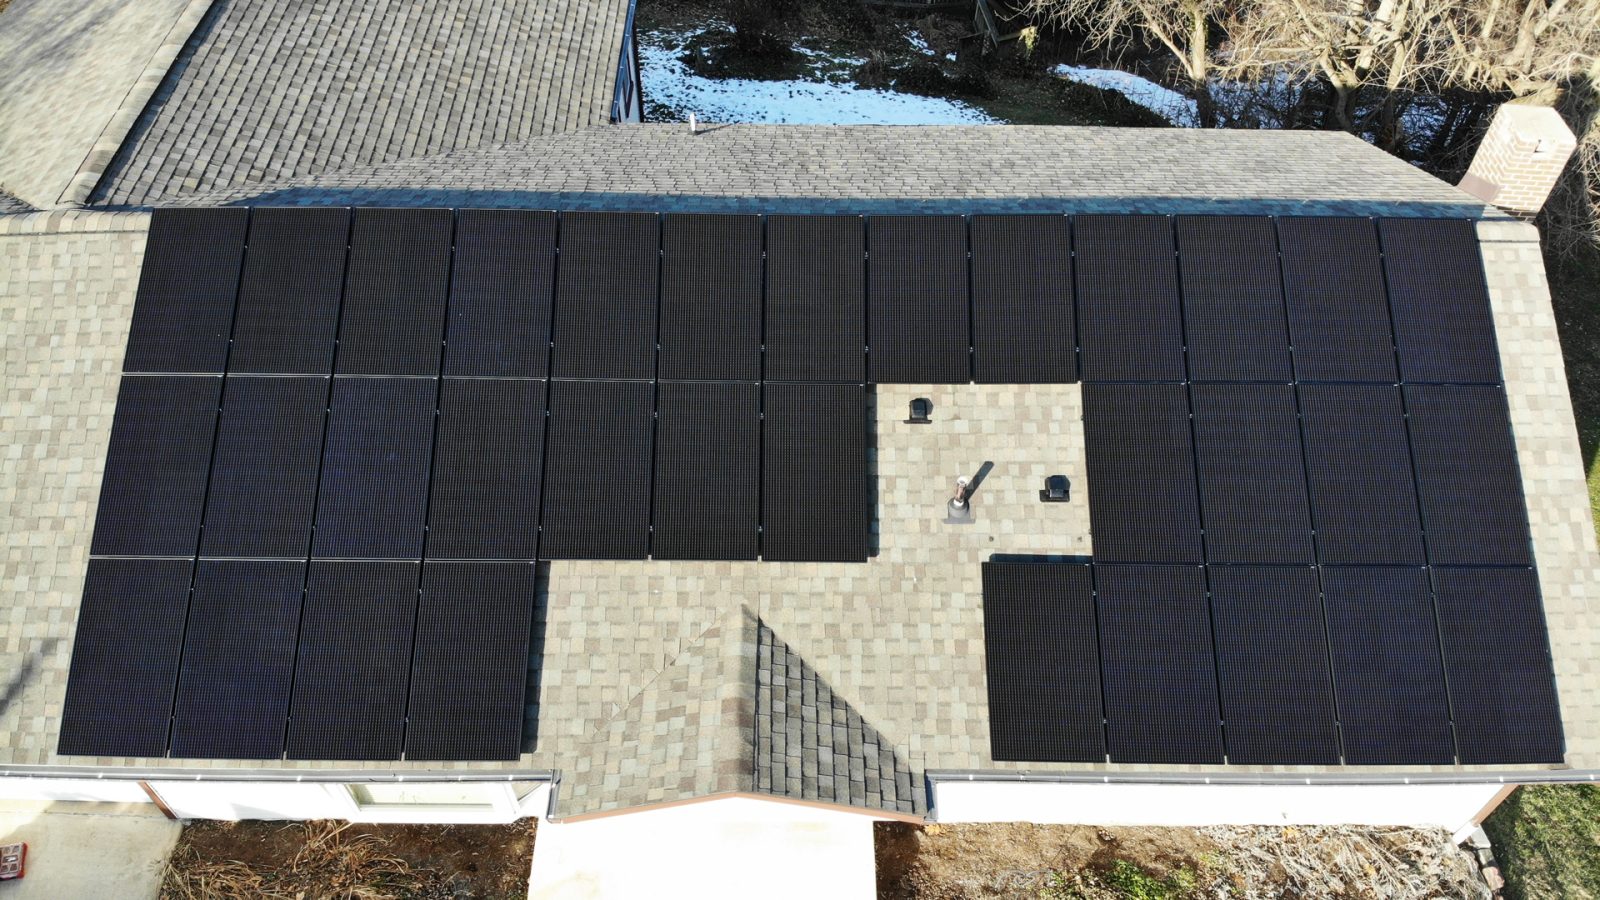 gordonville pa grid tied solar panel system installation